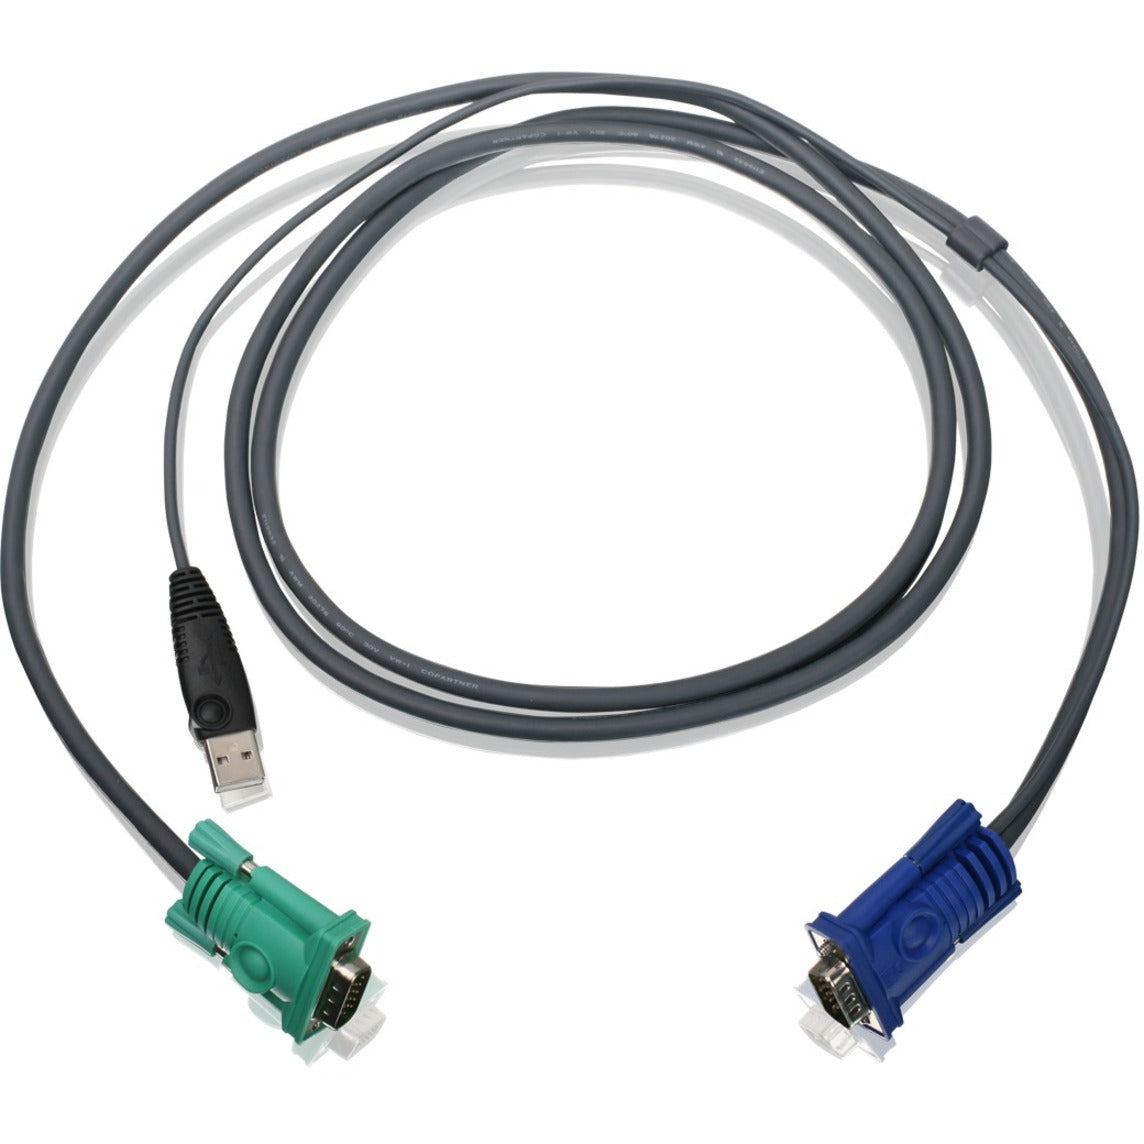 كيبل KVM USB من IOGEAR G2L5202UTAA 6 قدمًا، ضمان مدى الحياة، متوافق مع اتفاقية TAA